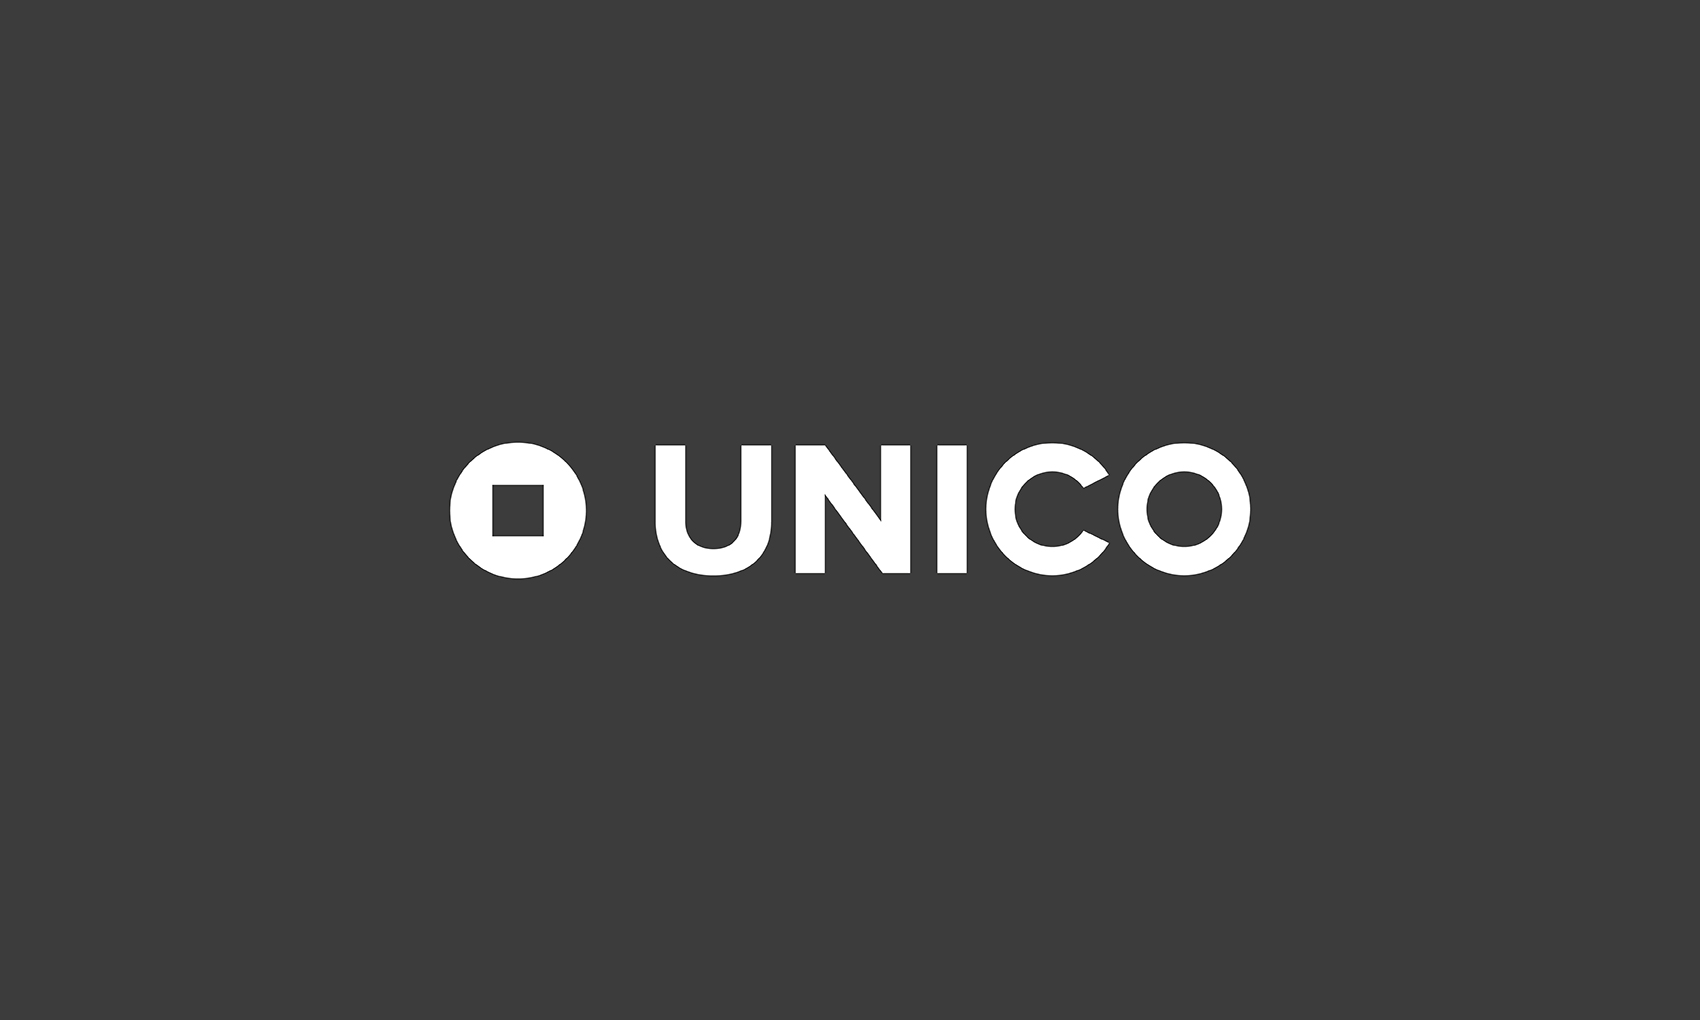 UNICO_01